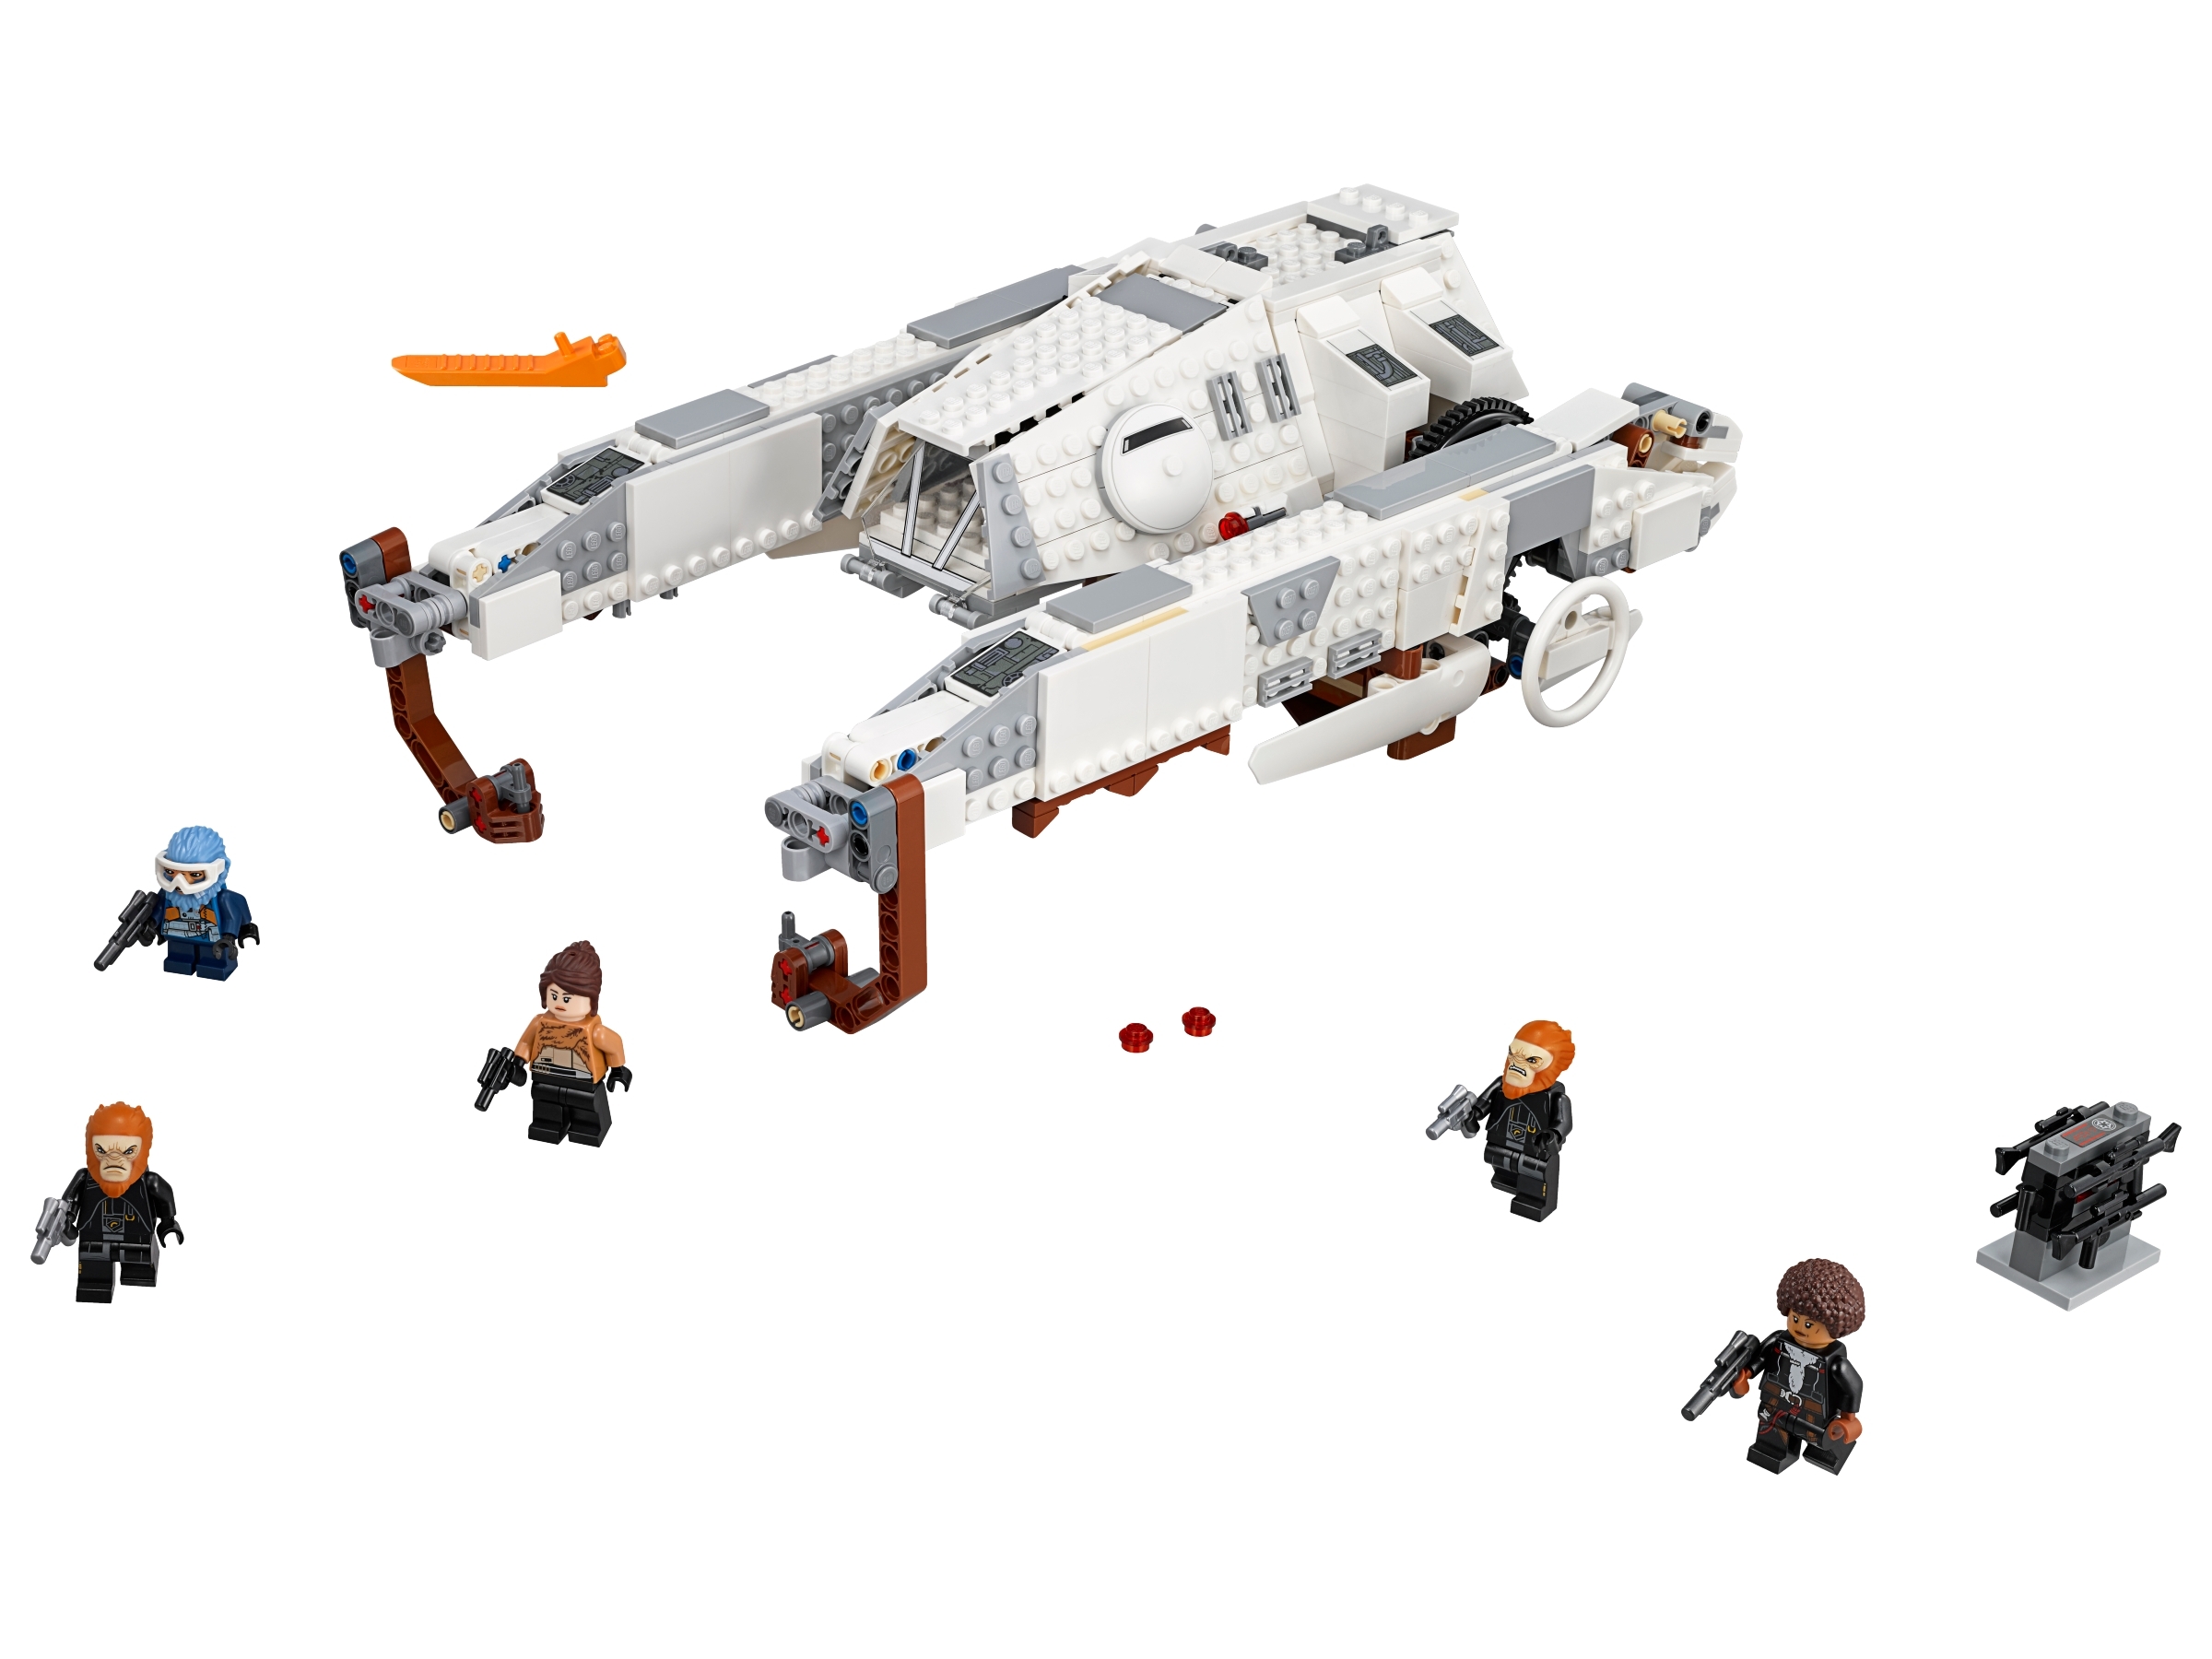 LEGO® Star Wars™ Figur aus Set 75219 Qi'ra mit Blaster-Pistole NEU 